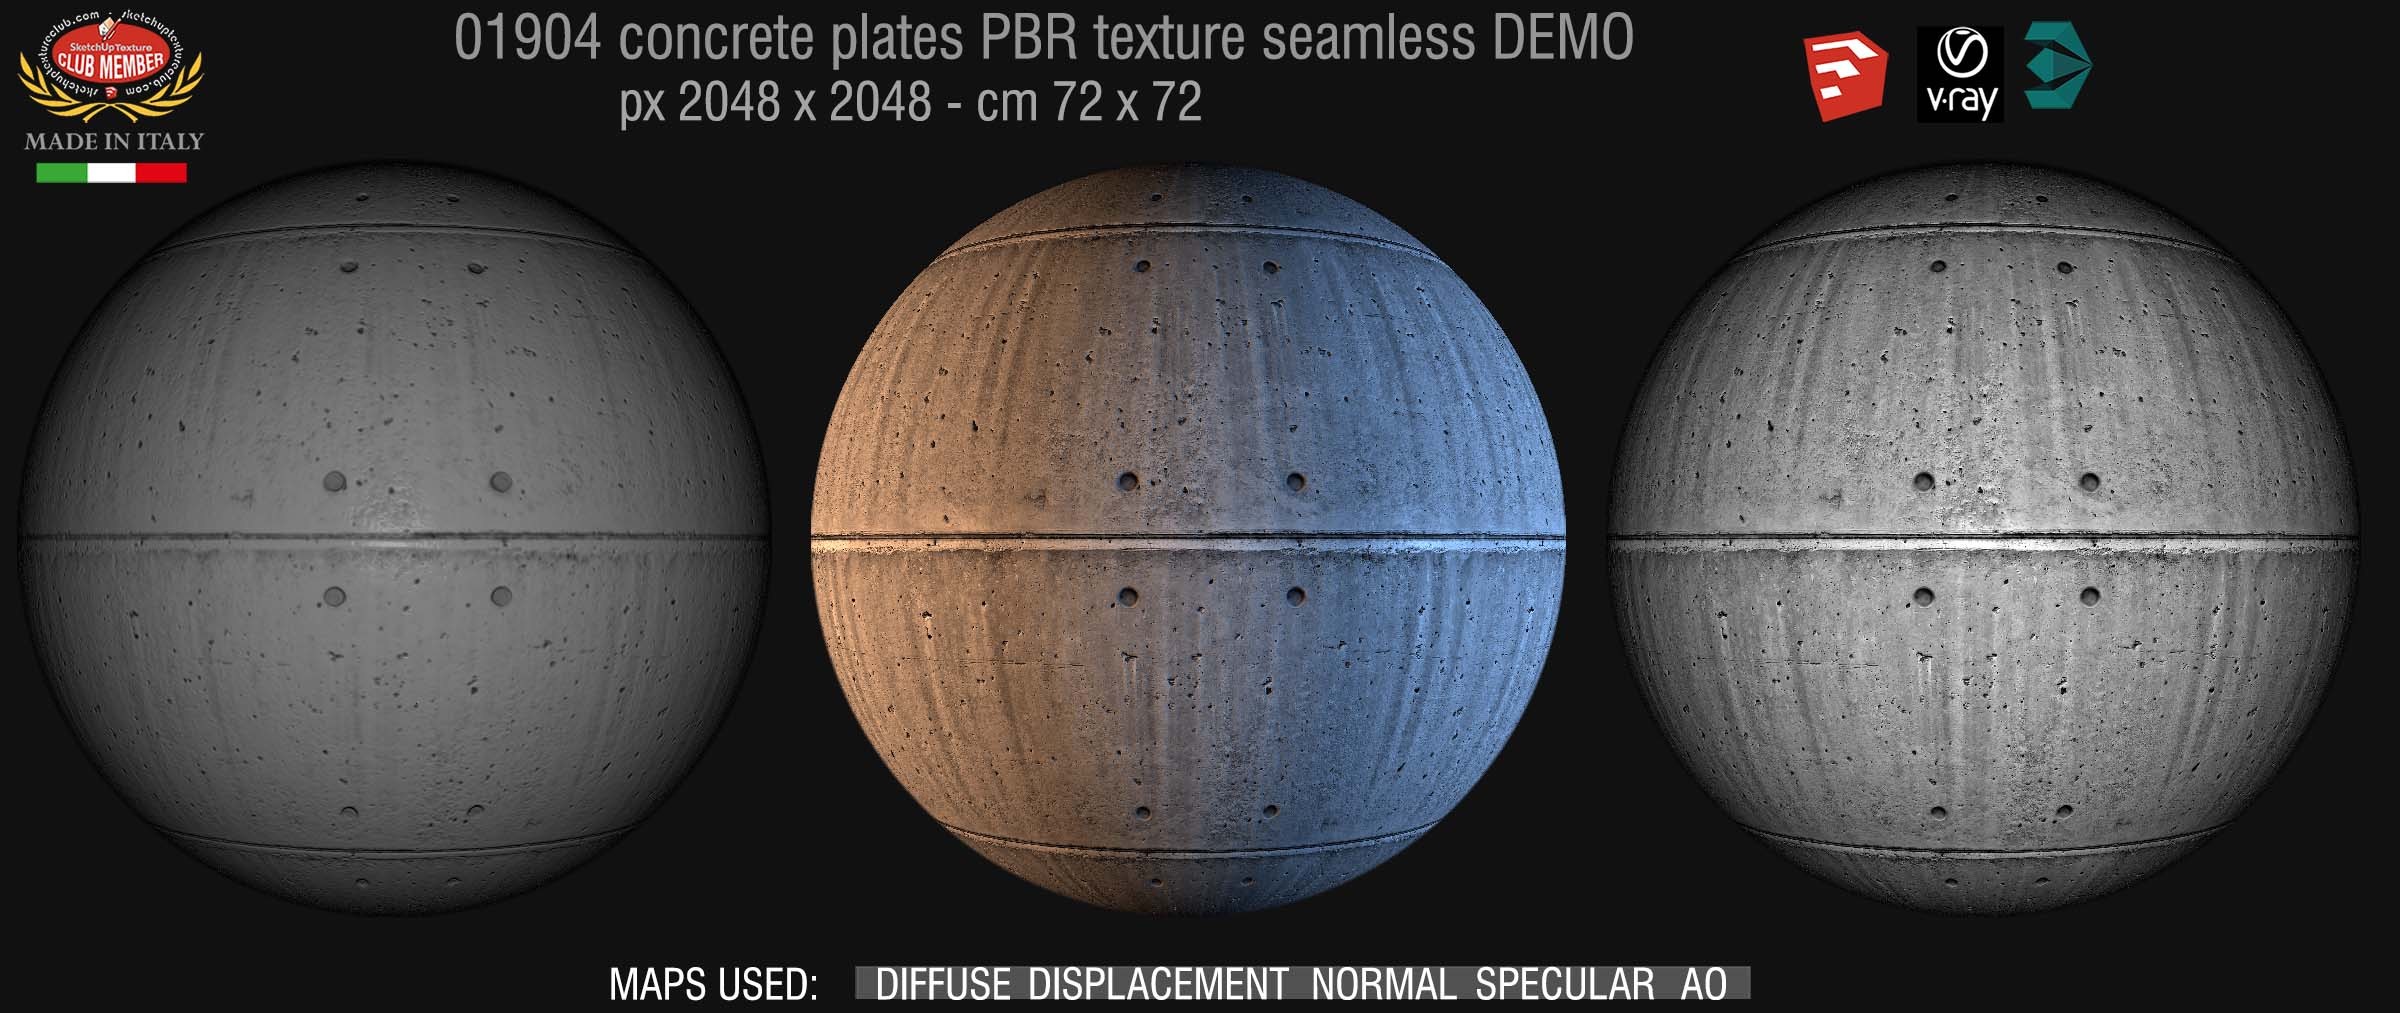 01904 Tadao ando concrete dirty plates PBR seamless texture DEMO